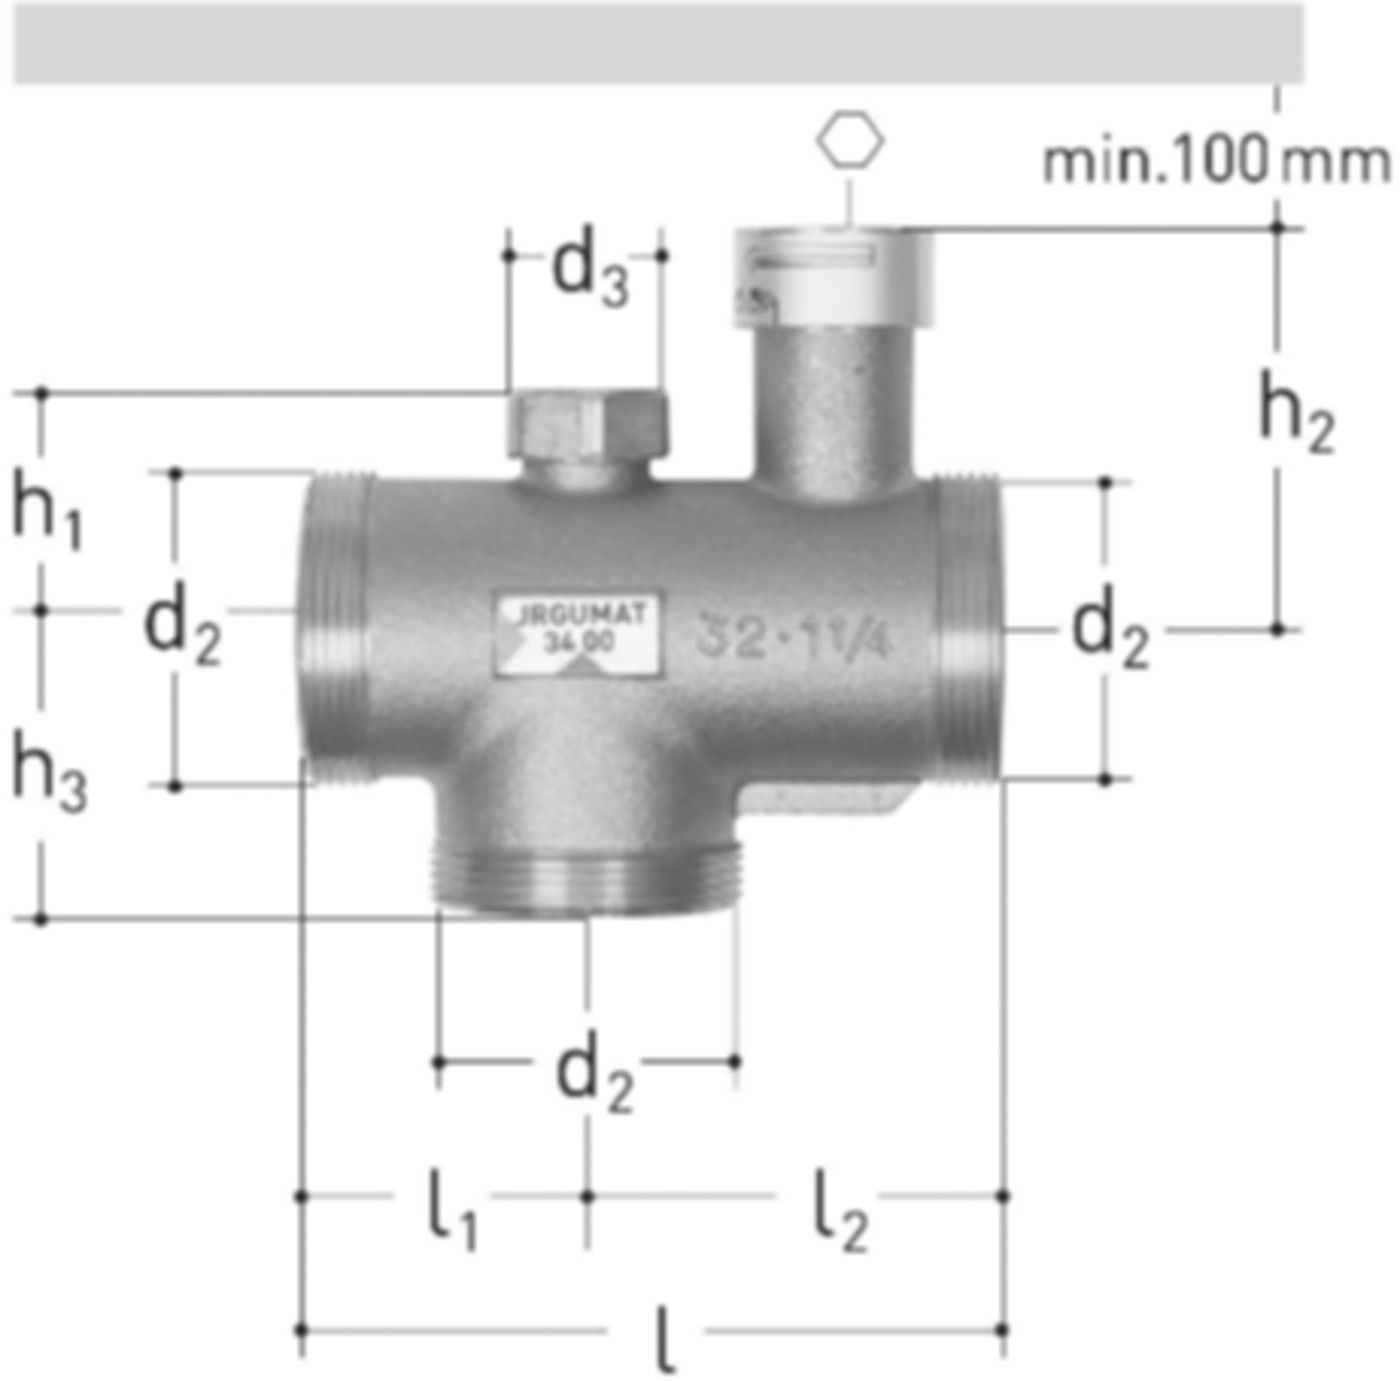 JRGUMAT Thermomischer PN 10 11/2" DN 40 25°C 3400.950 - JRG Armaturen